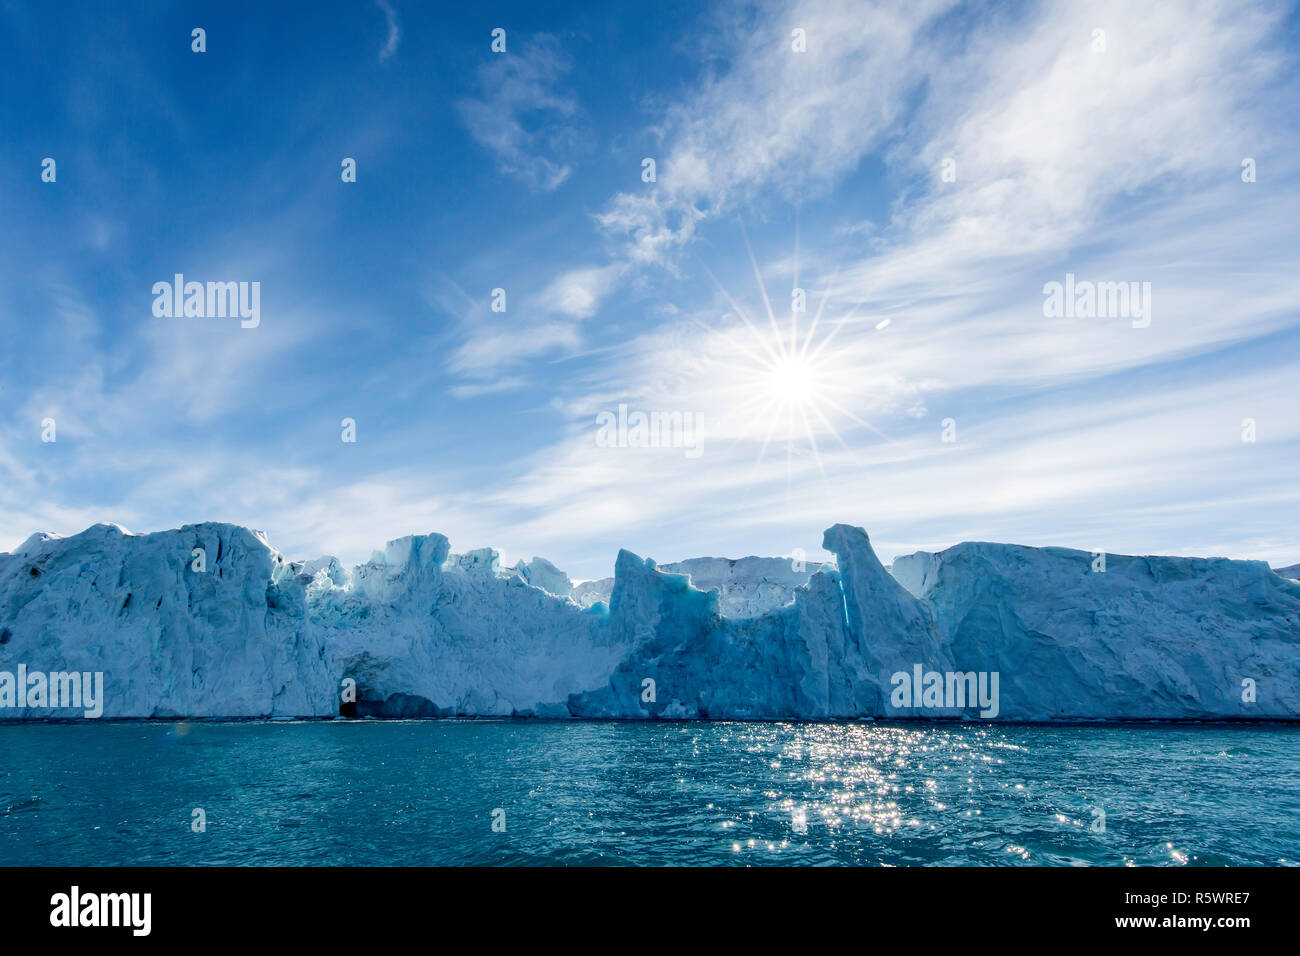 Monacobreen, Monaco Gletscher, der Blick in die Sonne, auf der nordöstlichen Seite der Insel Spitzbergen, Svalbard, Norwegen Stockfoto